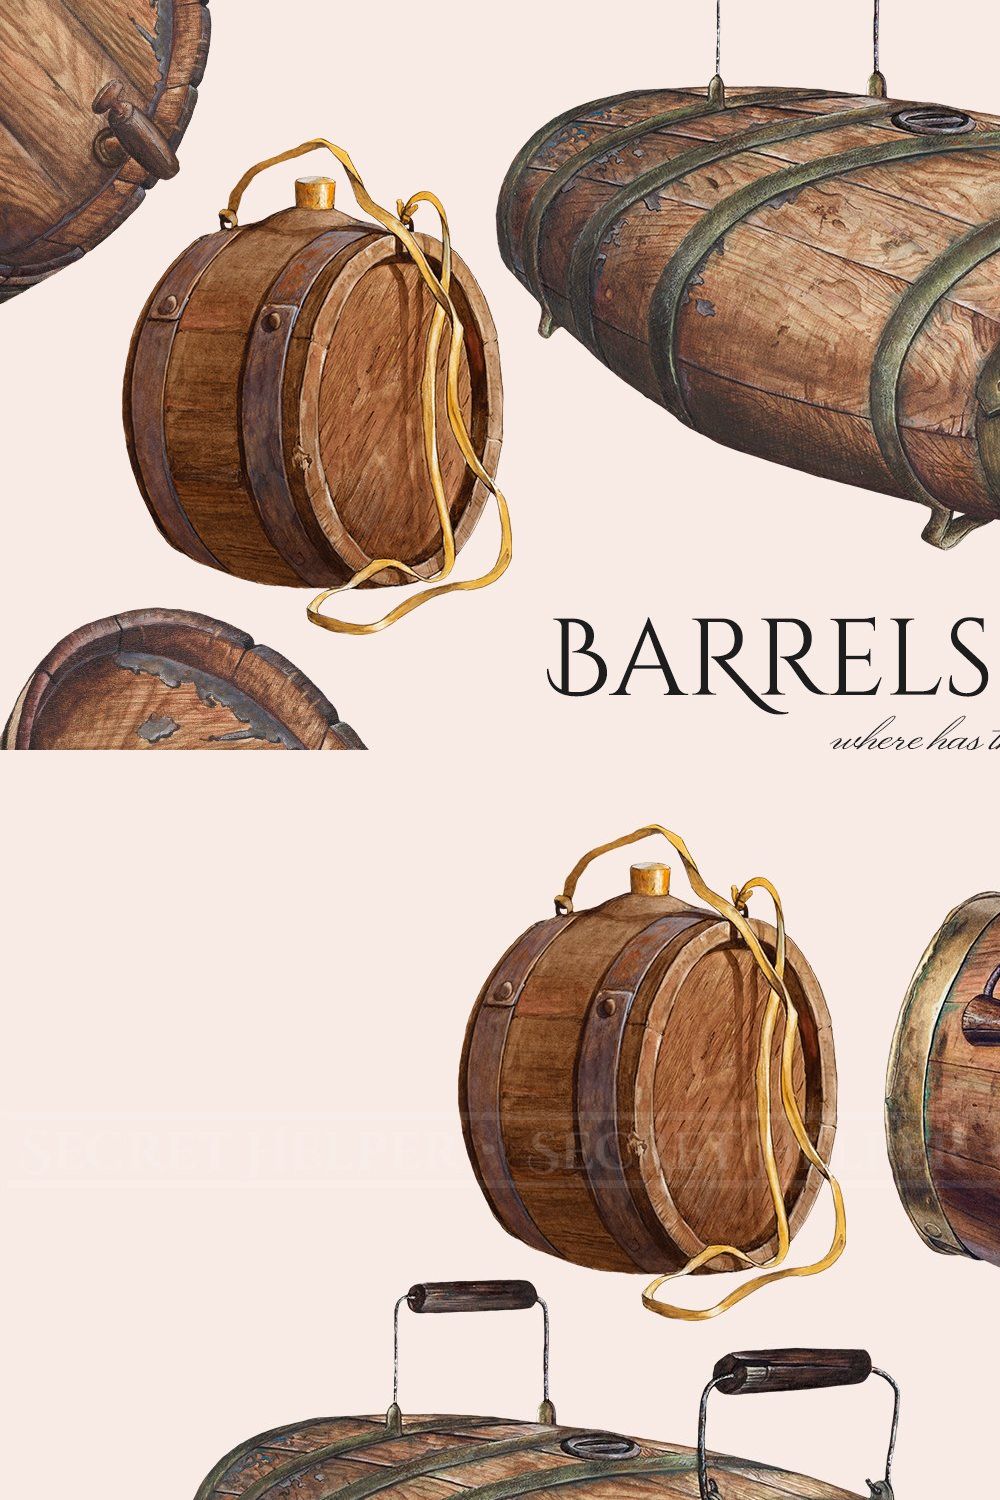 Vintage Barrels & Kegs Set pinterest preview image.